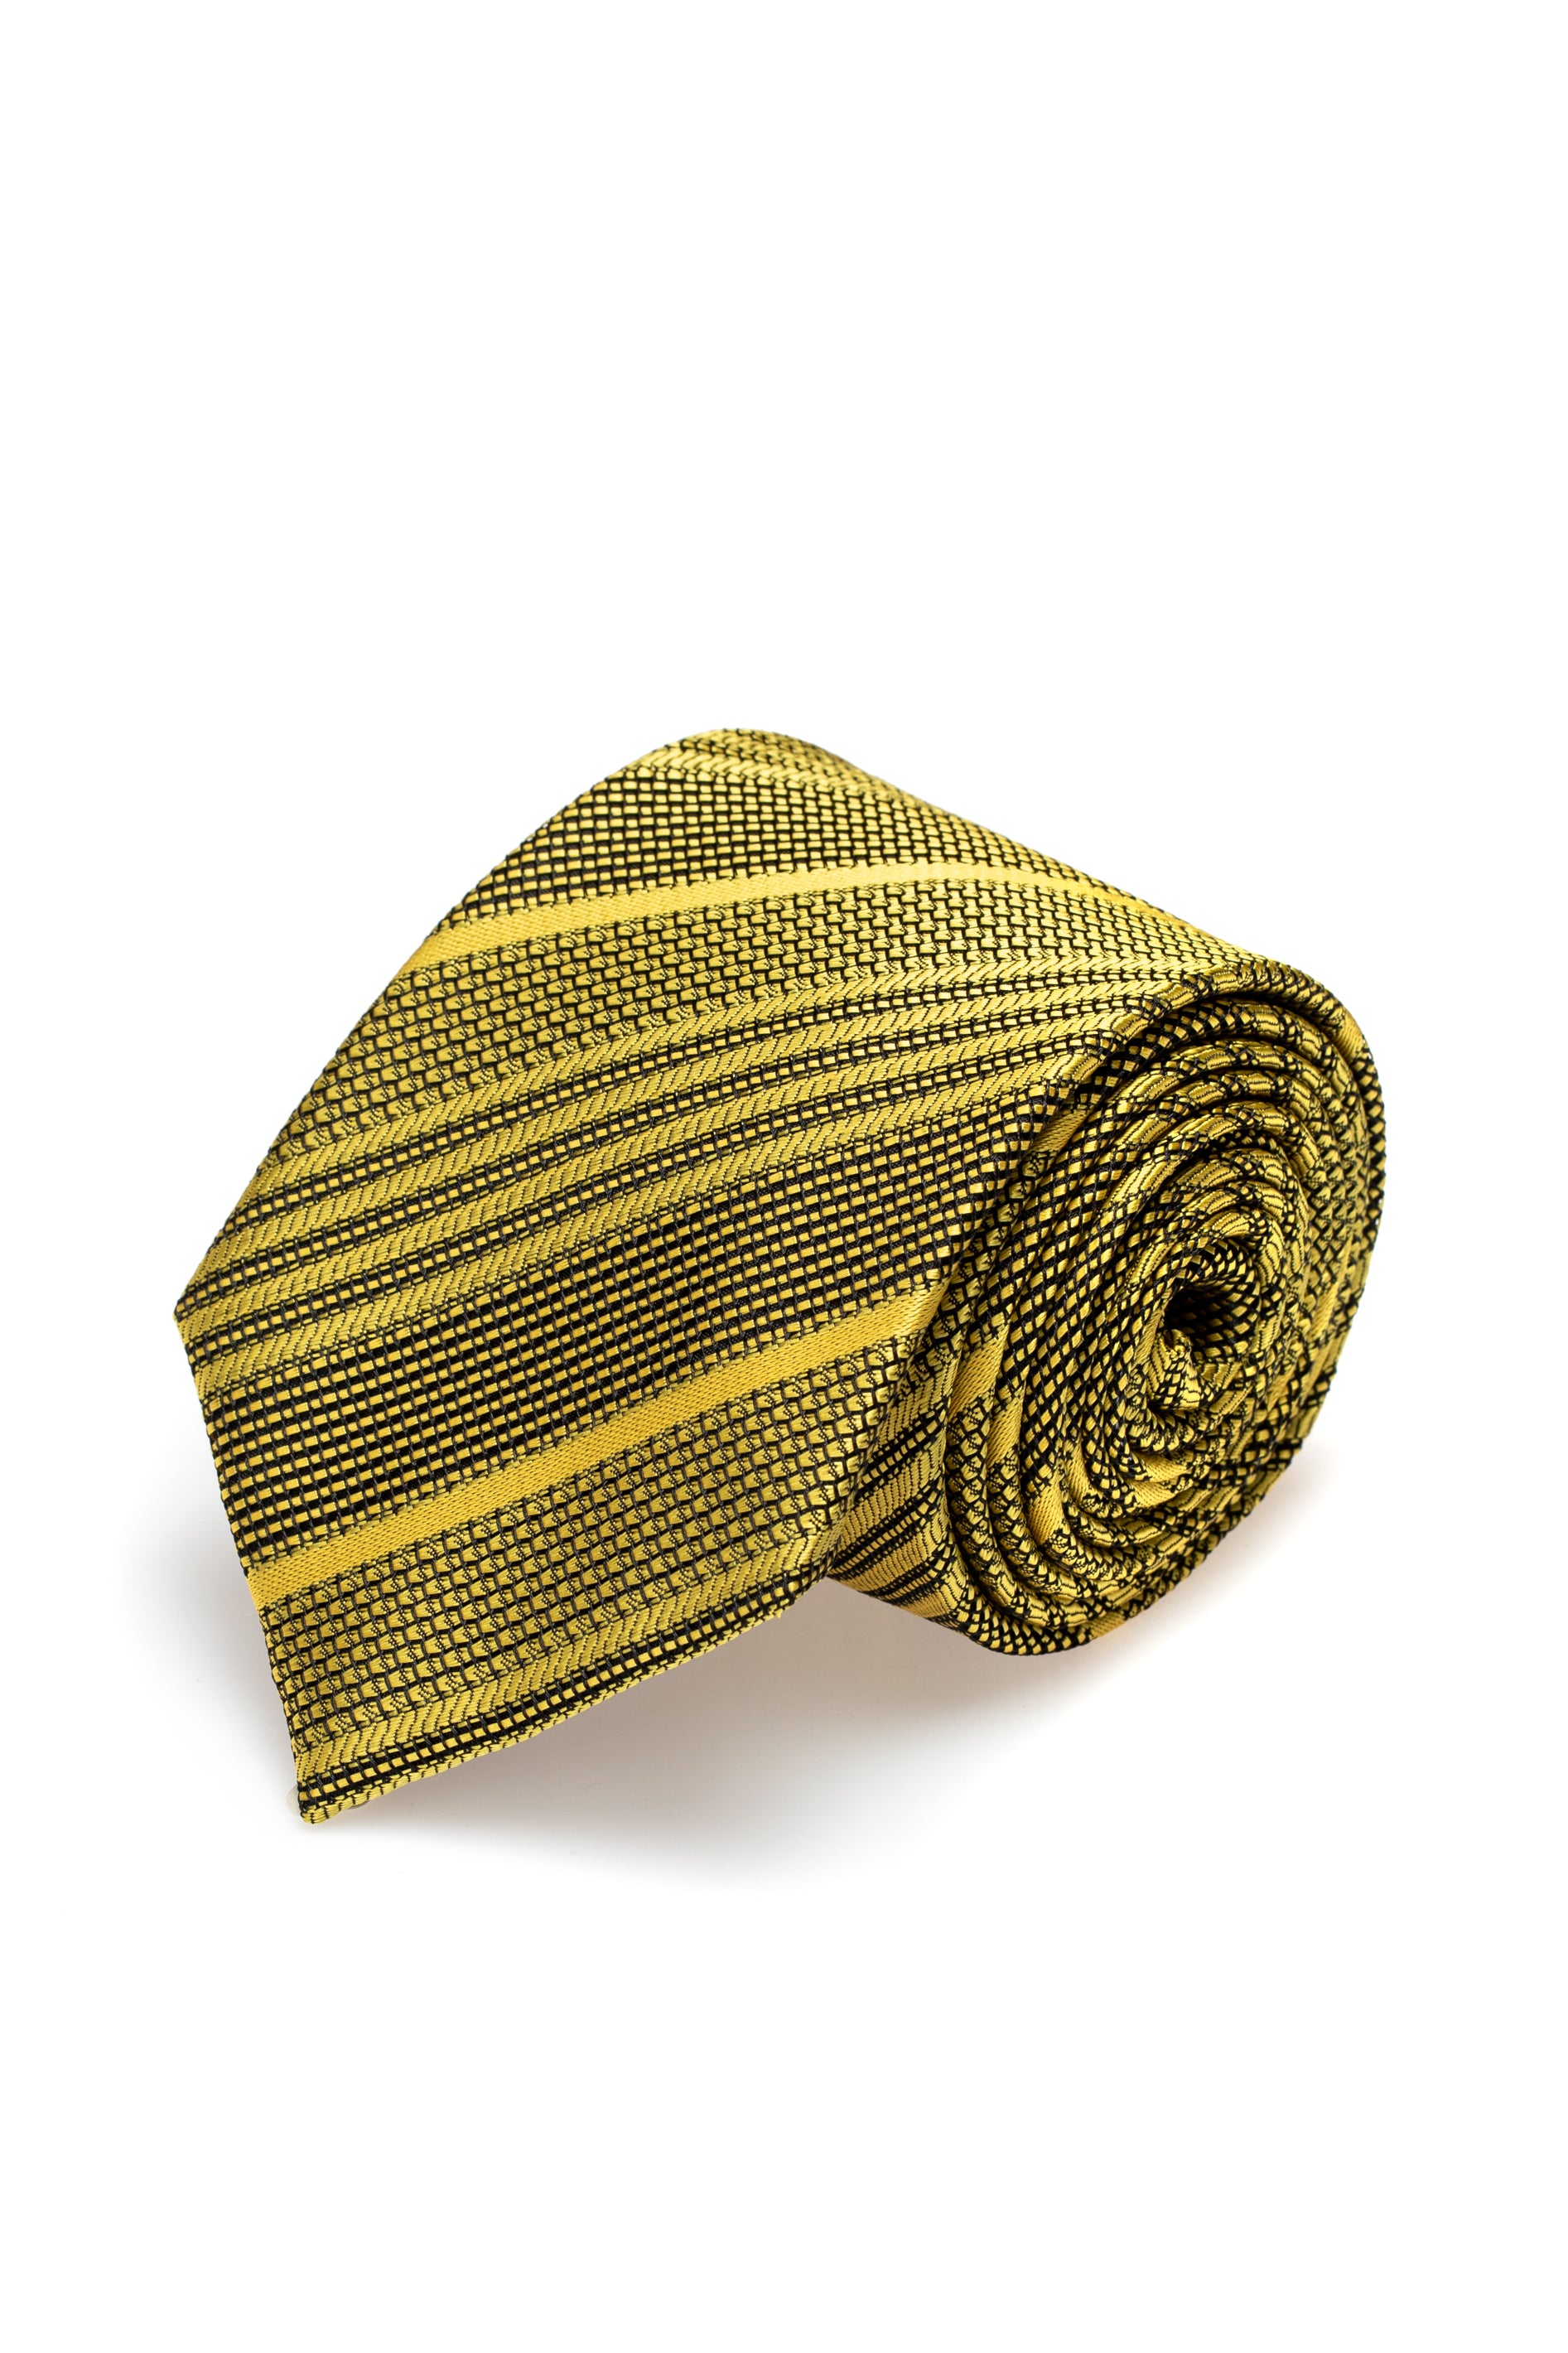 Cravatta in seta gialla con texture e righe